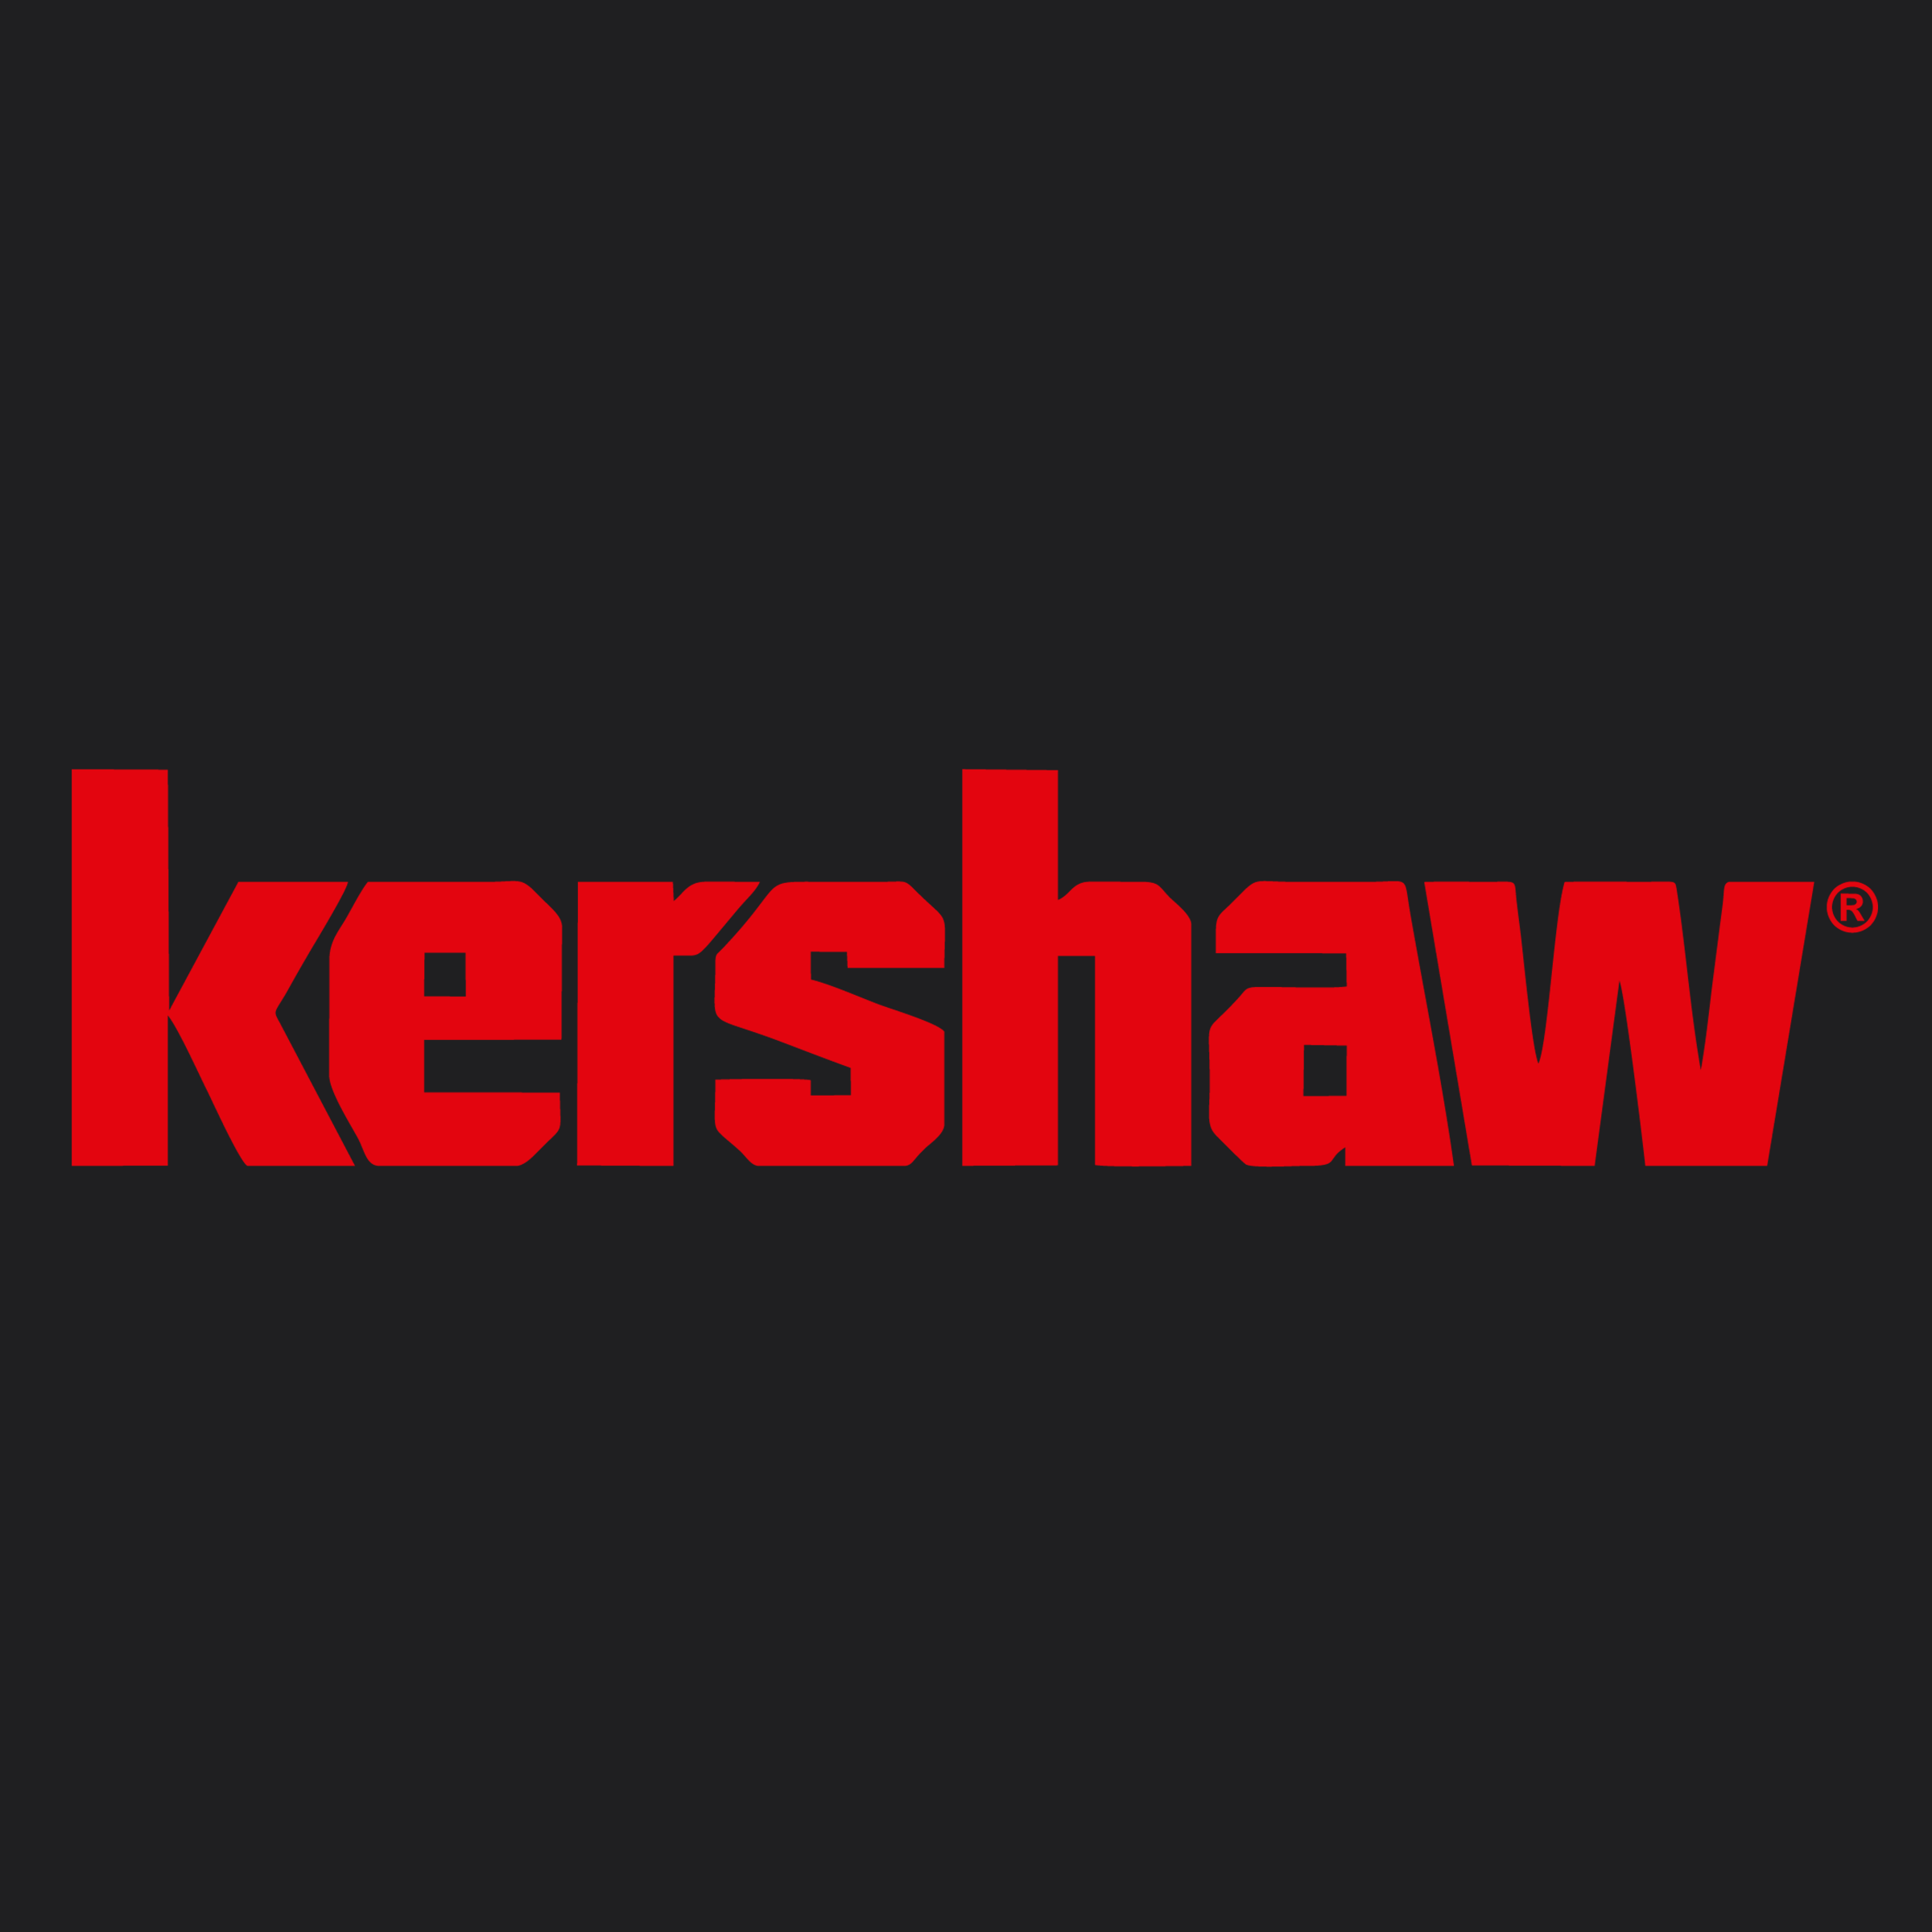 Kershaw Knives